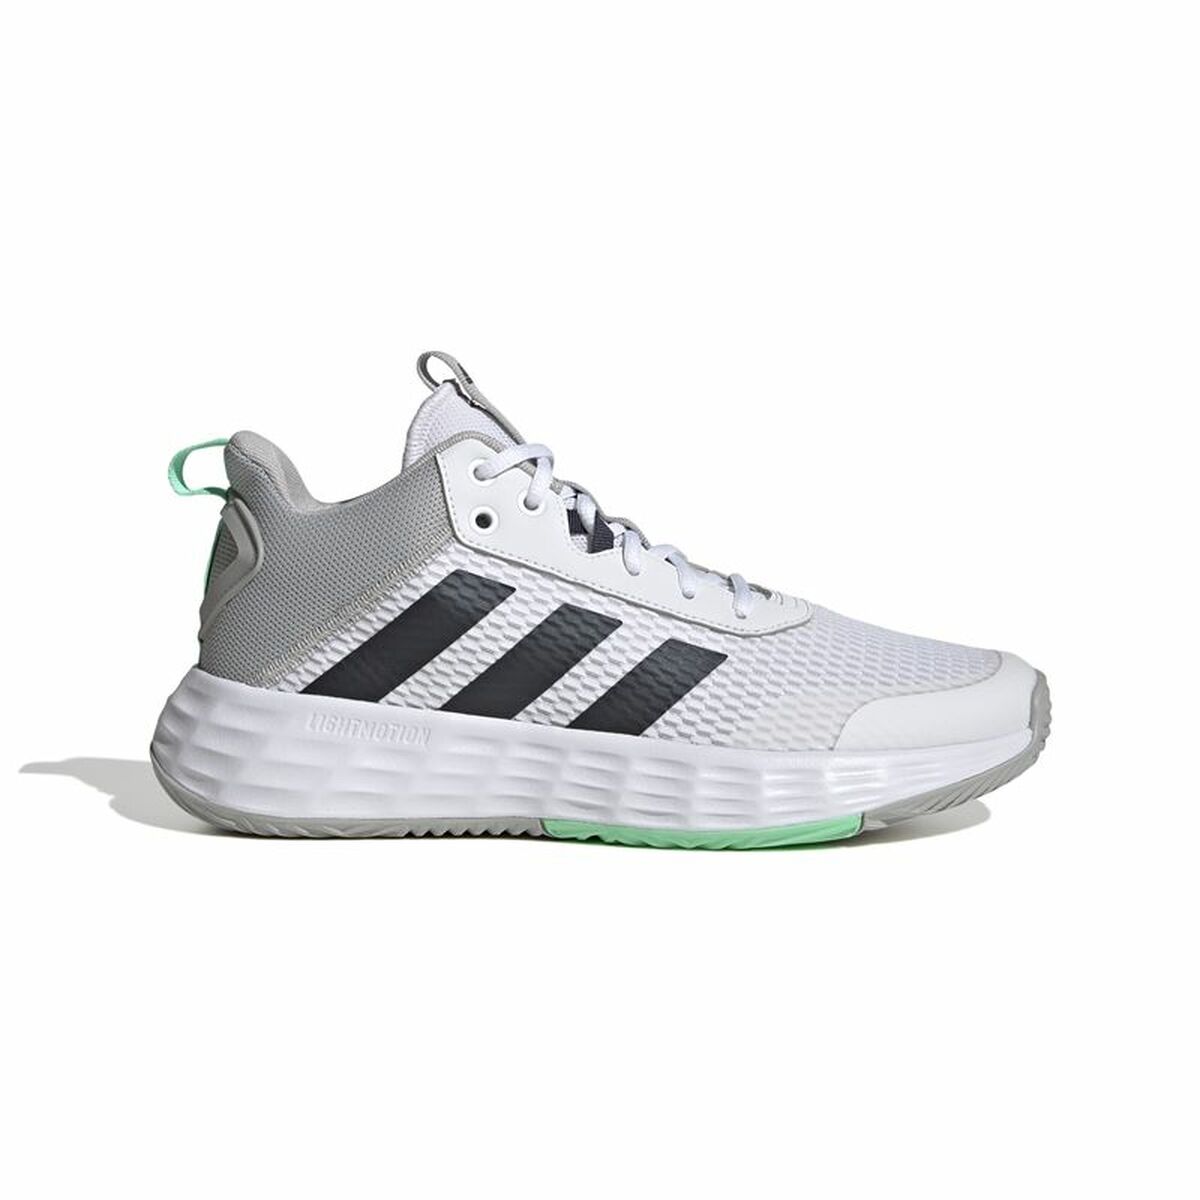 Osta tuote Aikuisten koripallokengät Adidas Ownthegame 2.0 Valkoinen Vaaleanharmaa (Jalankoko: 44 2/3) verkkokaupastamme Korhone: Urheilu & Vapaa-aika 20% alennuksella koodilla VIIKONLOPPU